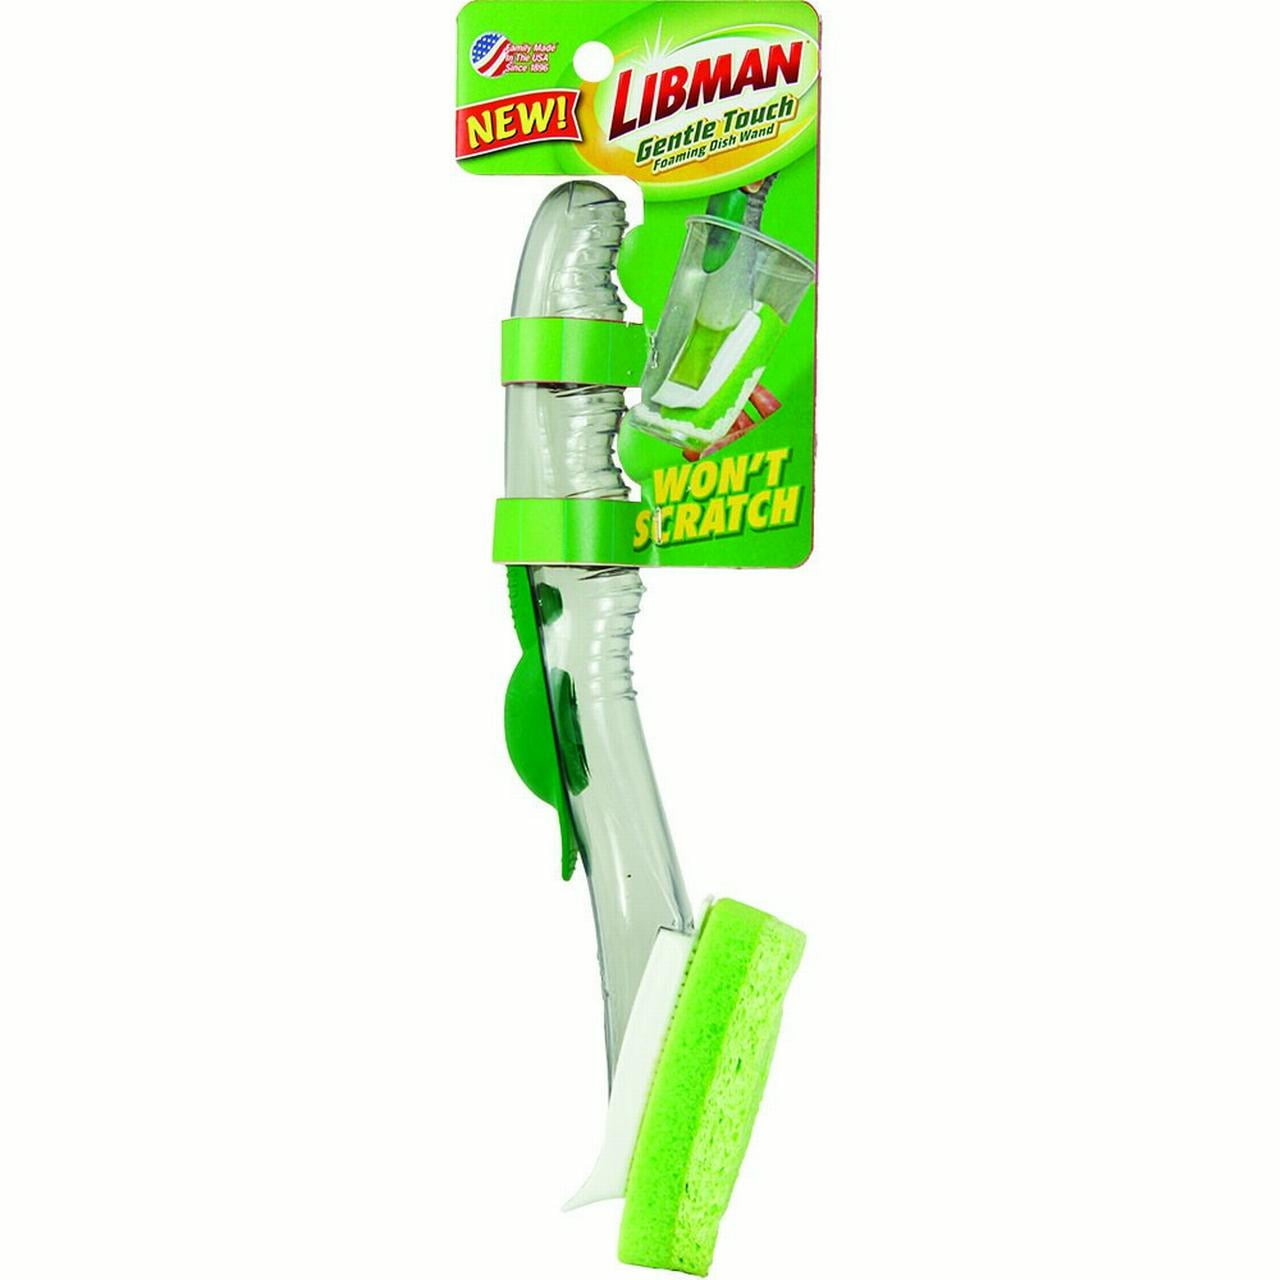 Libman Dish Brush (00046)